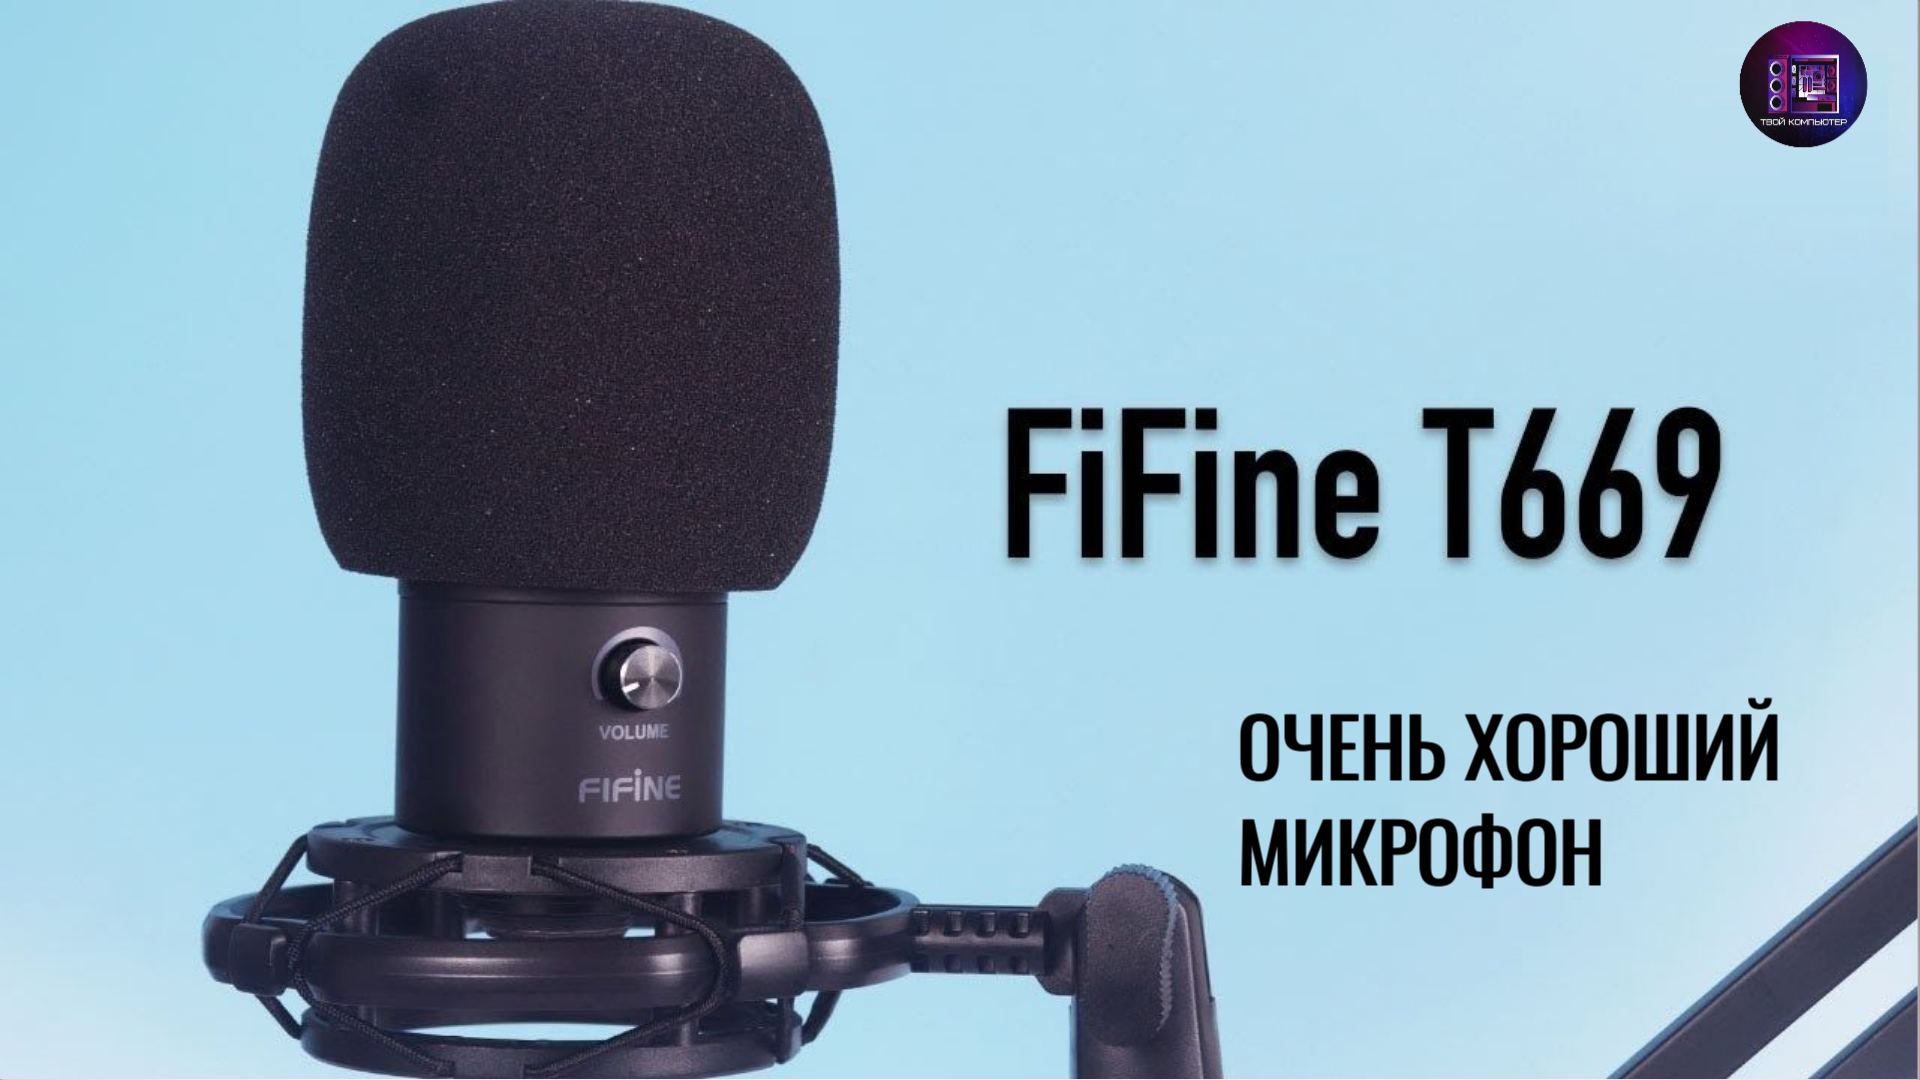 Микрофон Fifine t669. Fifine t669 черный. Микрофон студийный Fifine t669. Микрофон Fifine t669 комплект.